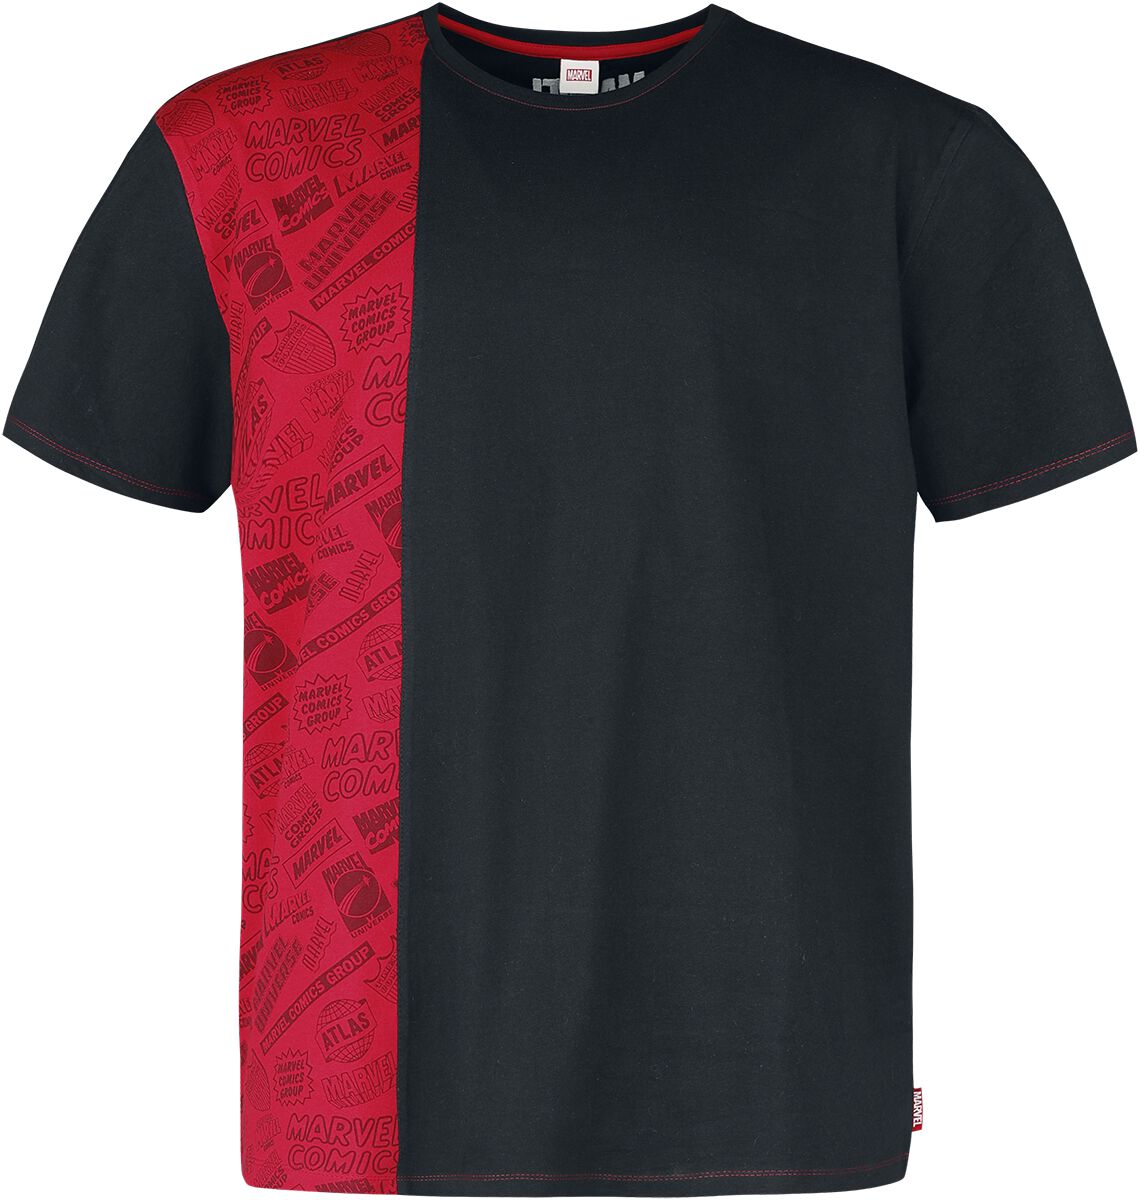 Marvel - Marvel T-Shirt - Heroes - S bis M - für Männer - Größe S - multicolor  - EMP exklusives Merchandise!